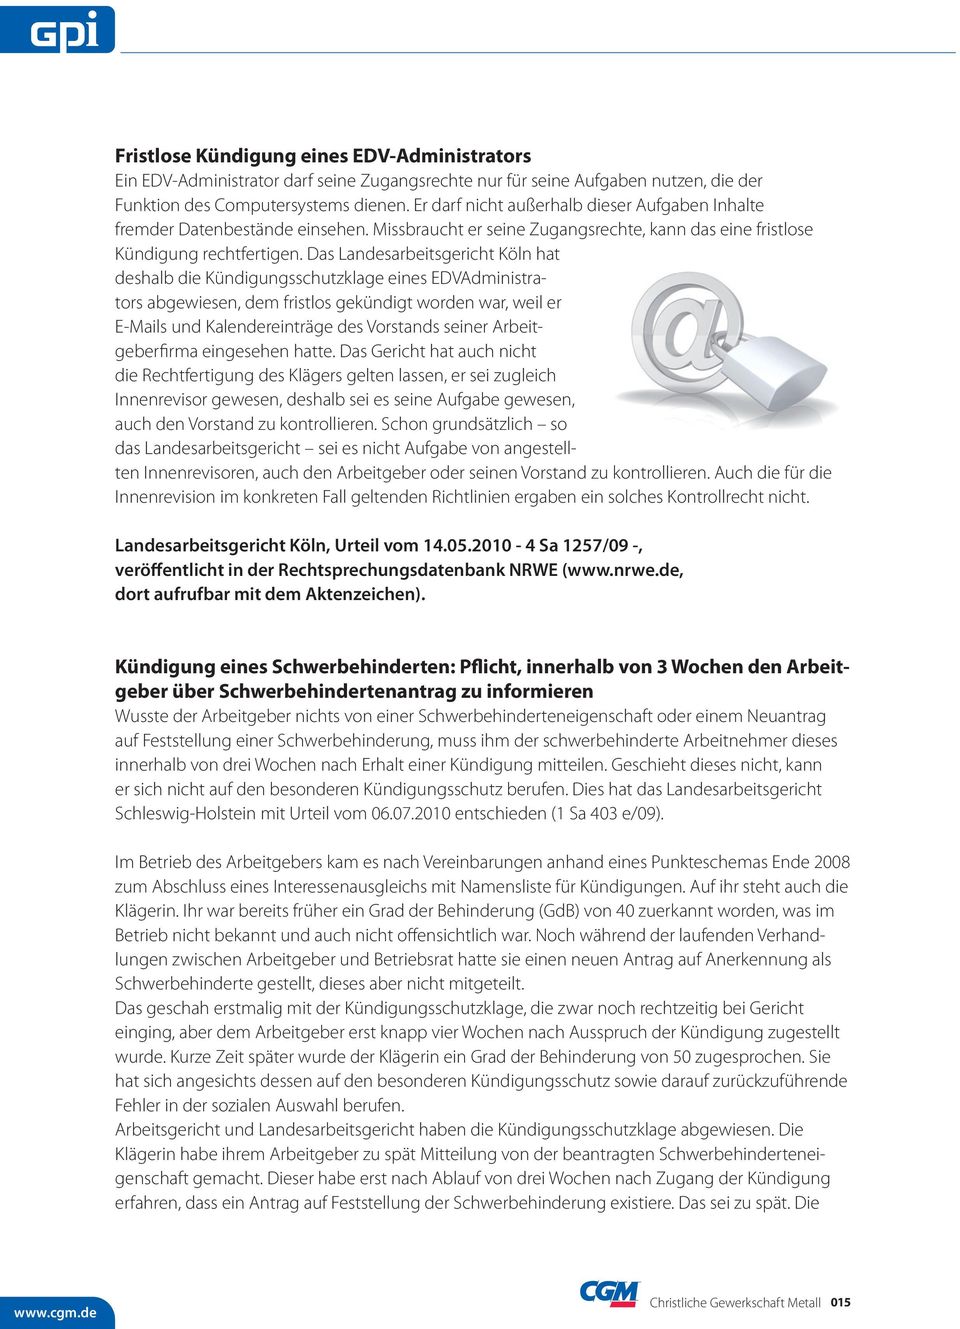 Das Landesarbeitsgericht Köln hat deshalb die Kündigungsschutzklage eines EDVAdministrators abgewiesen, dem fristlos gekündigt worden war, weil er E-Mails und Kalendereinträge des Vorstands seiner